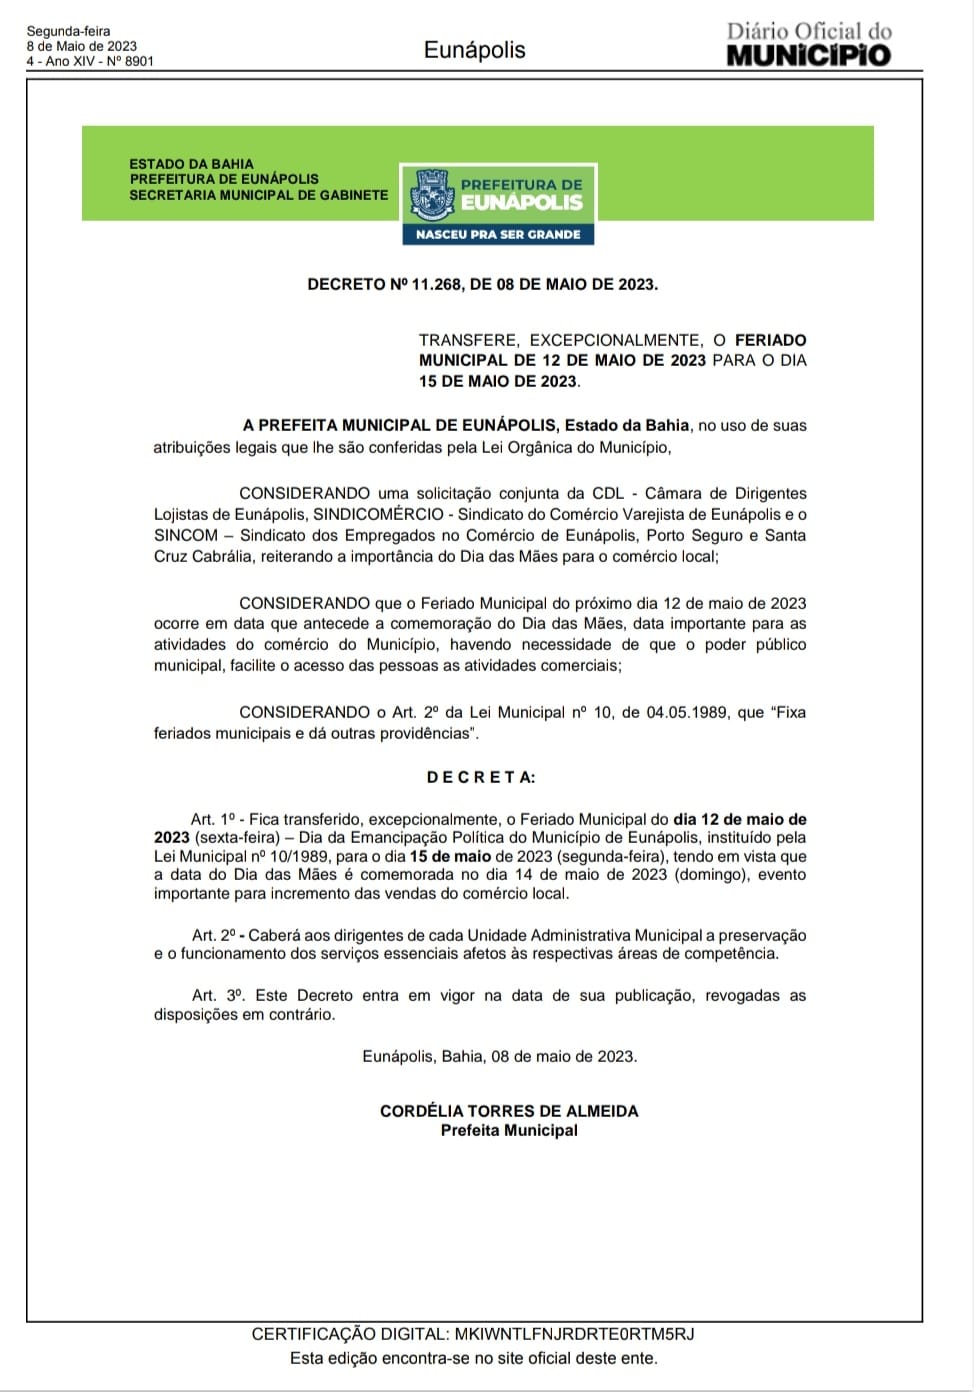 Prefeita Cordélia Torres atende apelo do comércio e transfere o feriado para 15 de maio 8